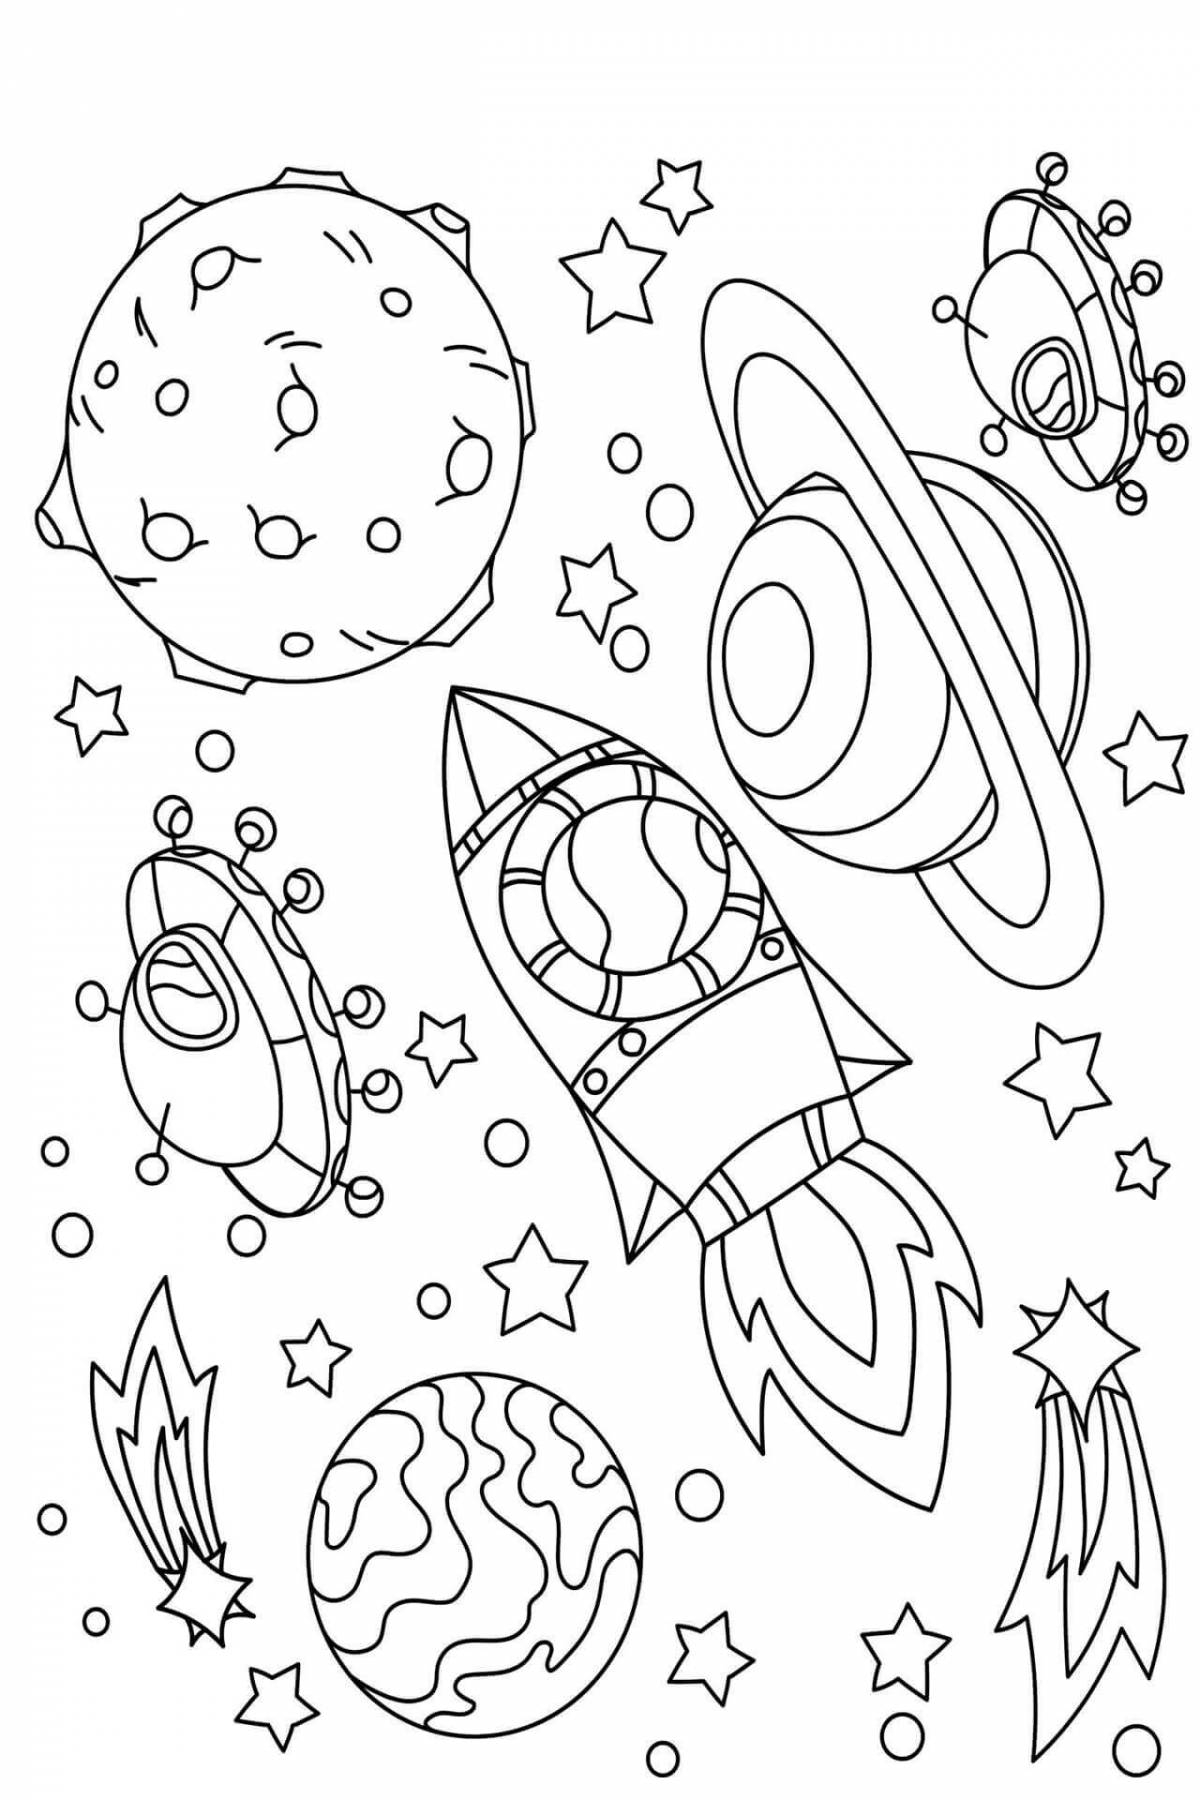 Картинки про космос и планеты для детей раскраски (68 фото)